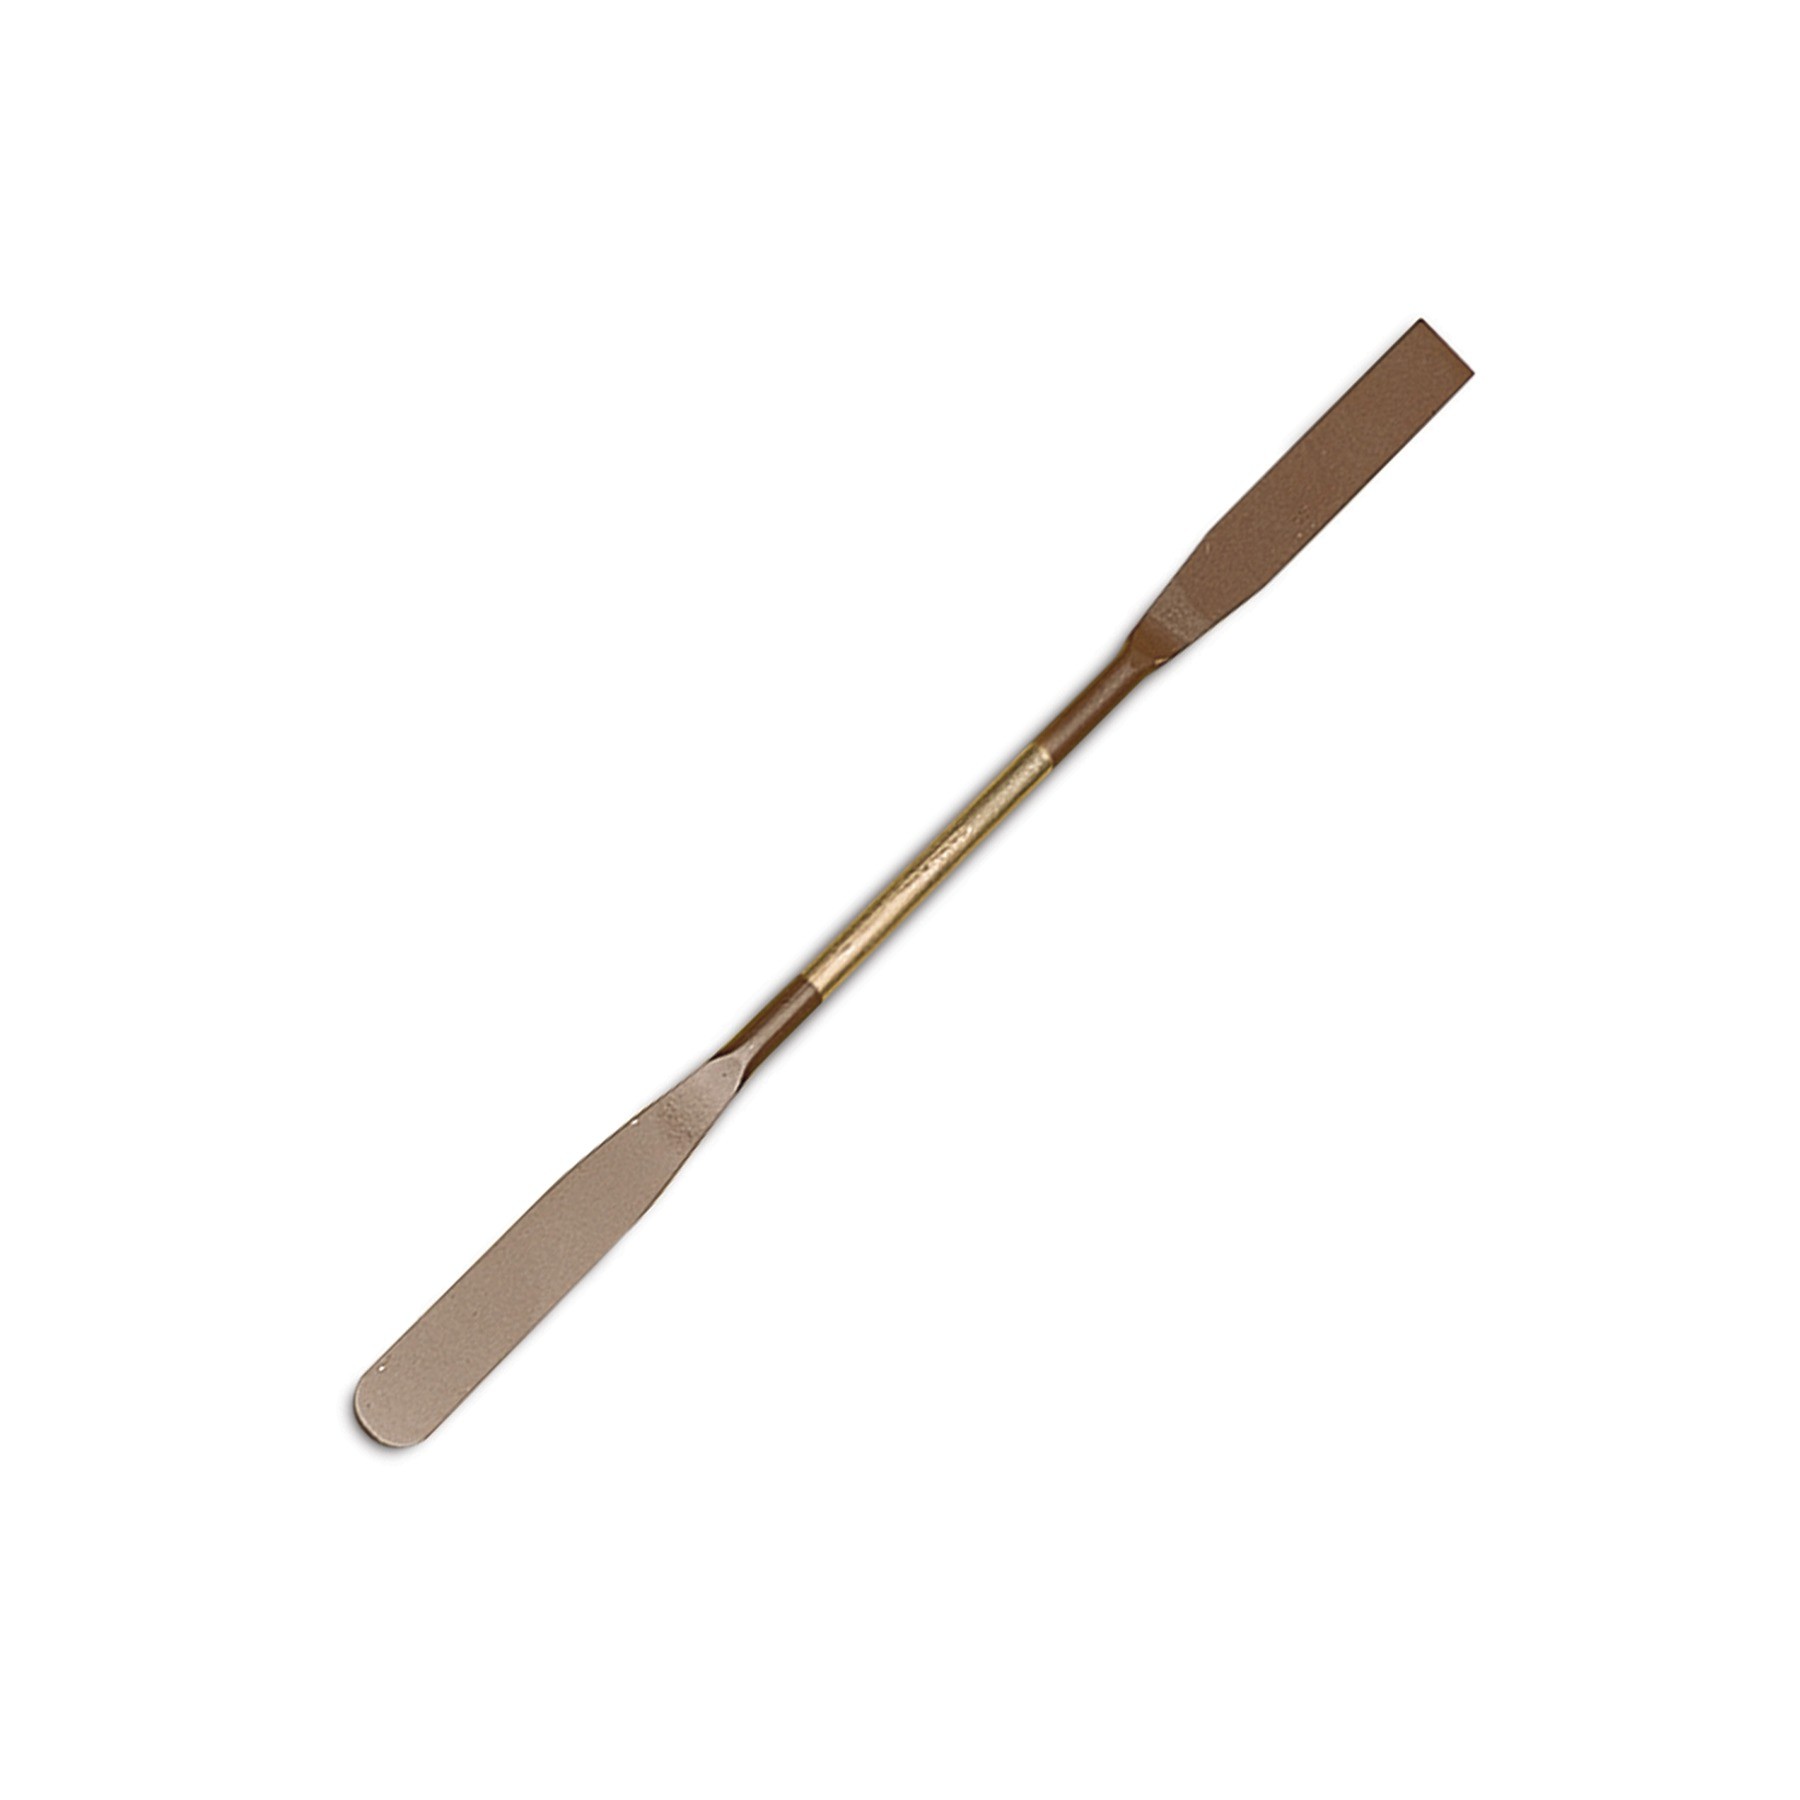 Teflon® spatula